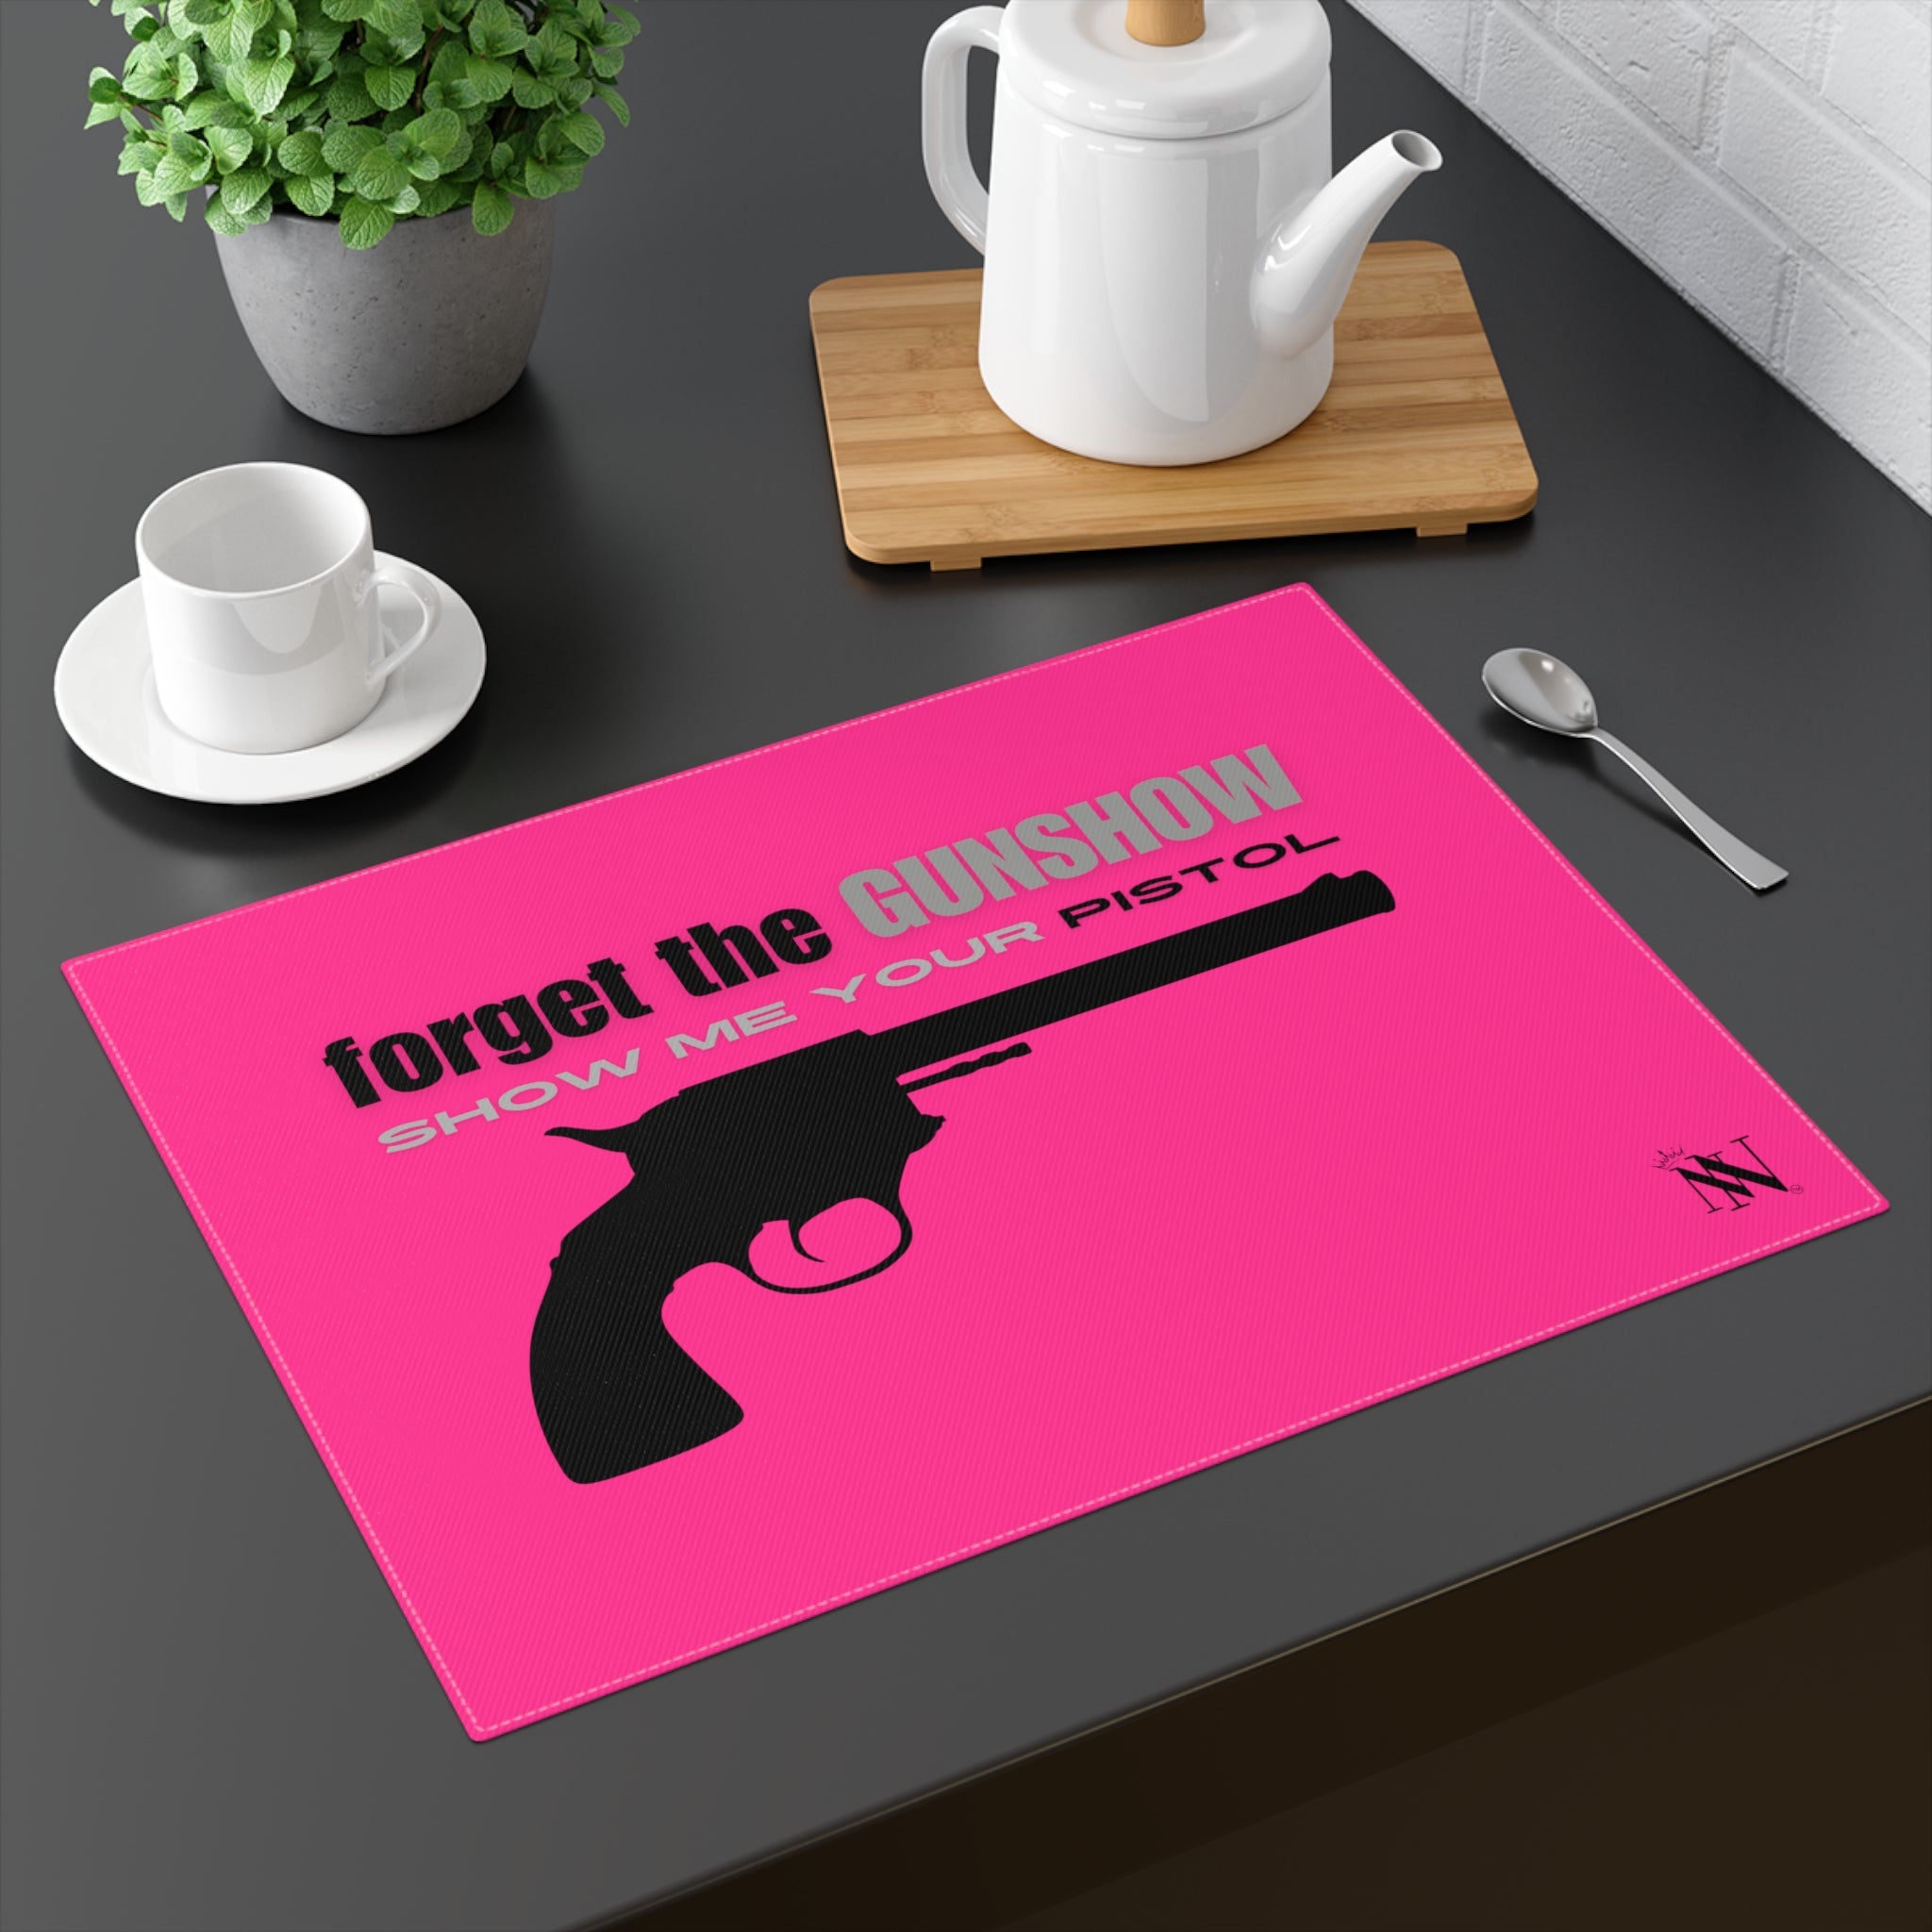 Pink pistol sex toys mat